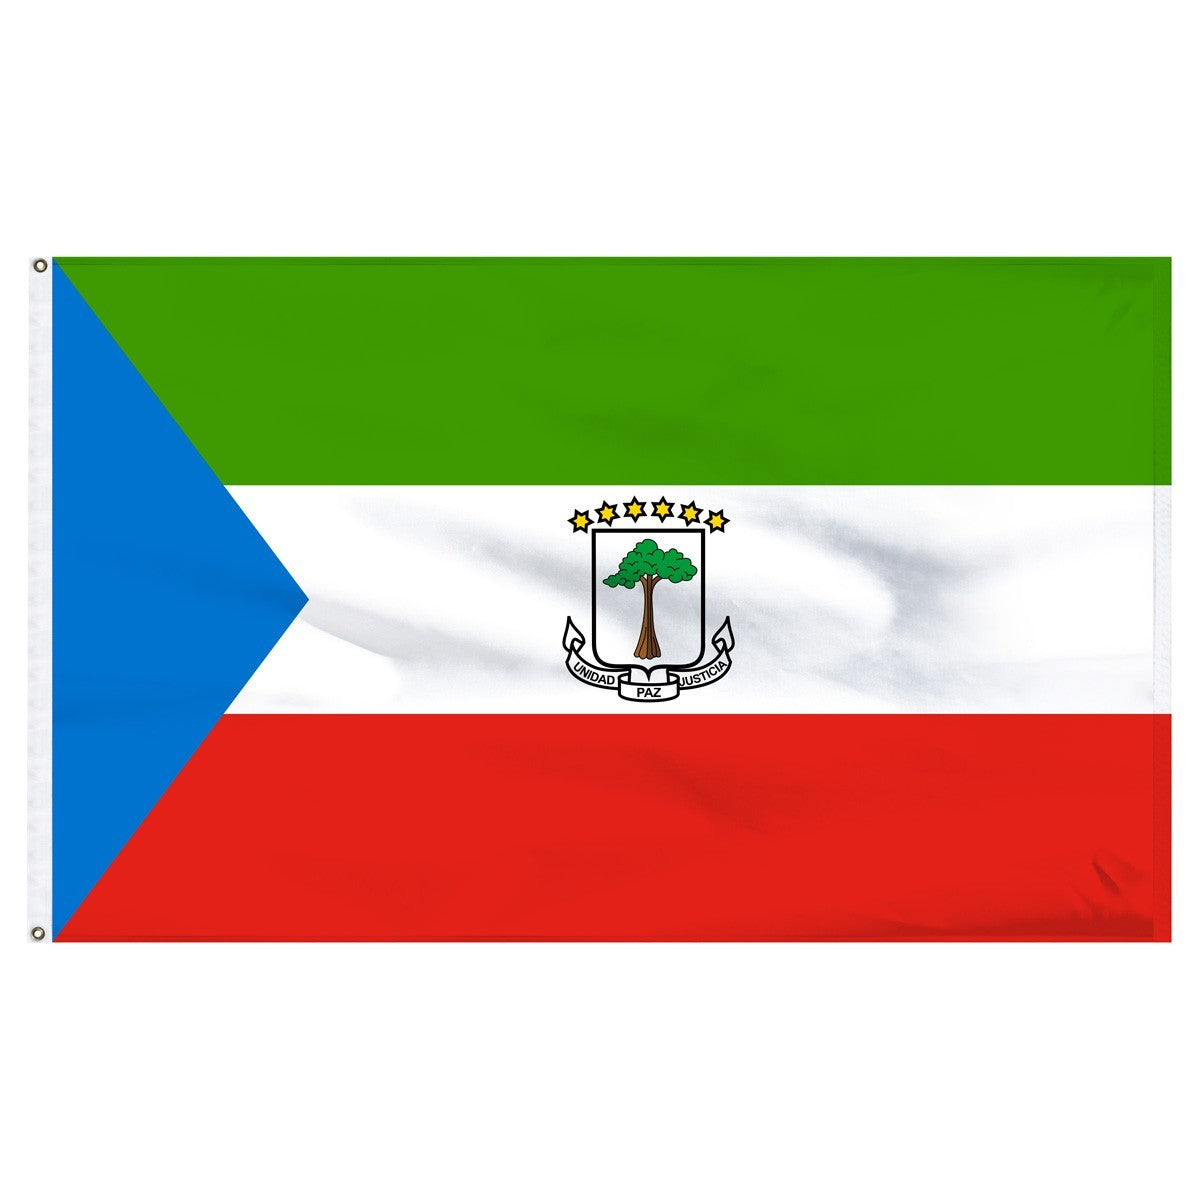 Equatorial Guinea flags for sale